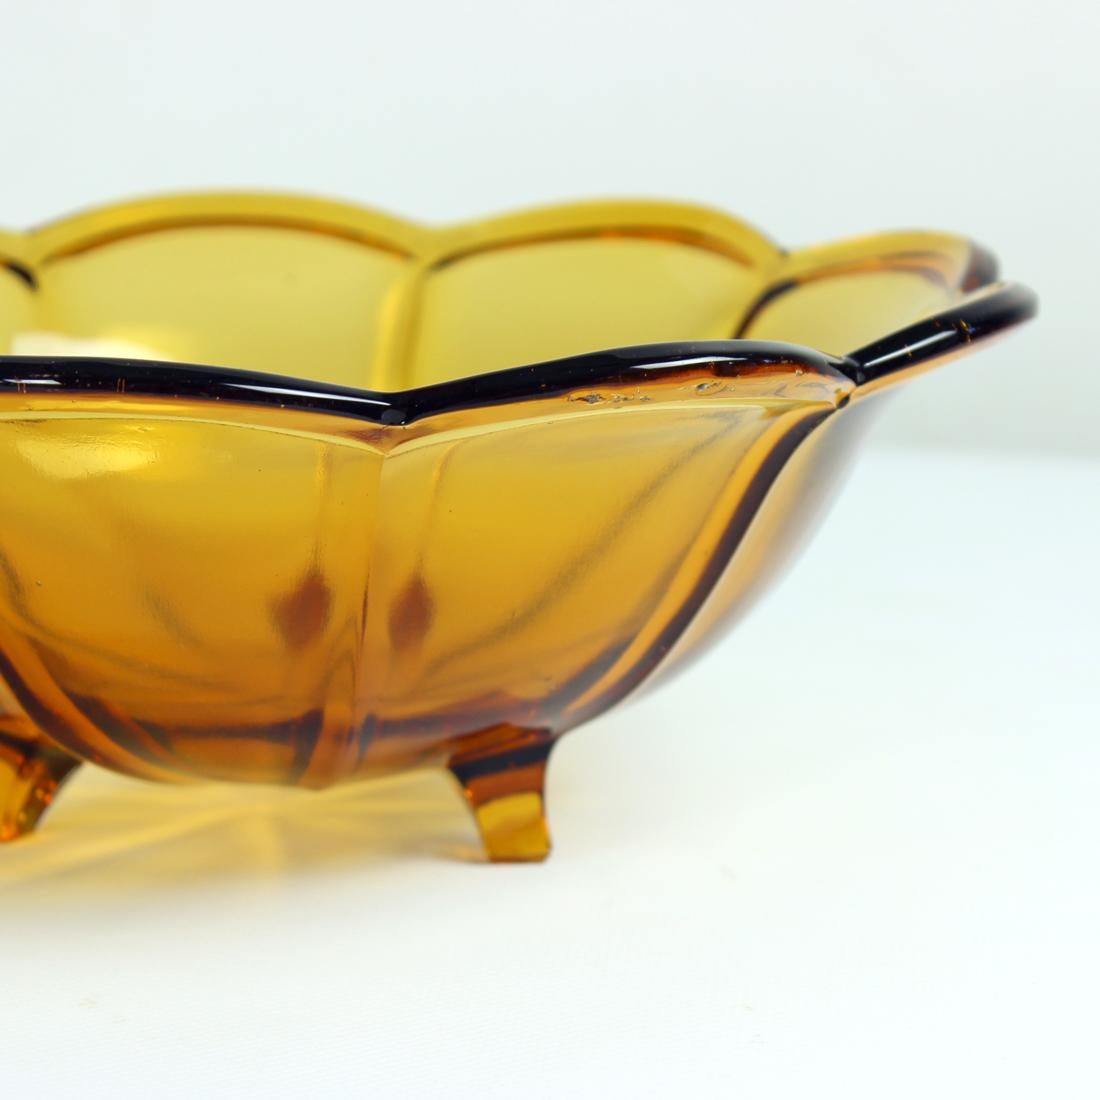 Magnifique bol en verre produit par Borske SkLO Union dans les années 1960 dans un verre ambré inhabituel. Le bol est indiqué dans un catalogue officiel comme étant le modèle 19484. Il est en excellent état. Il y a quelques bulles dans le verre,